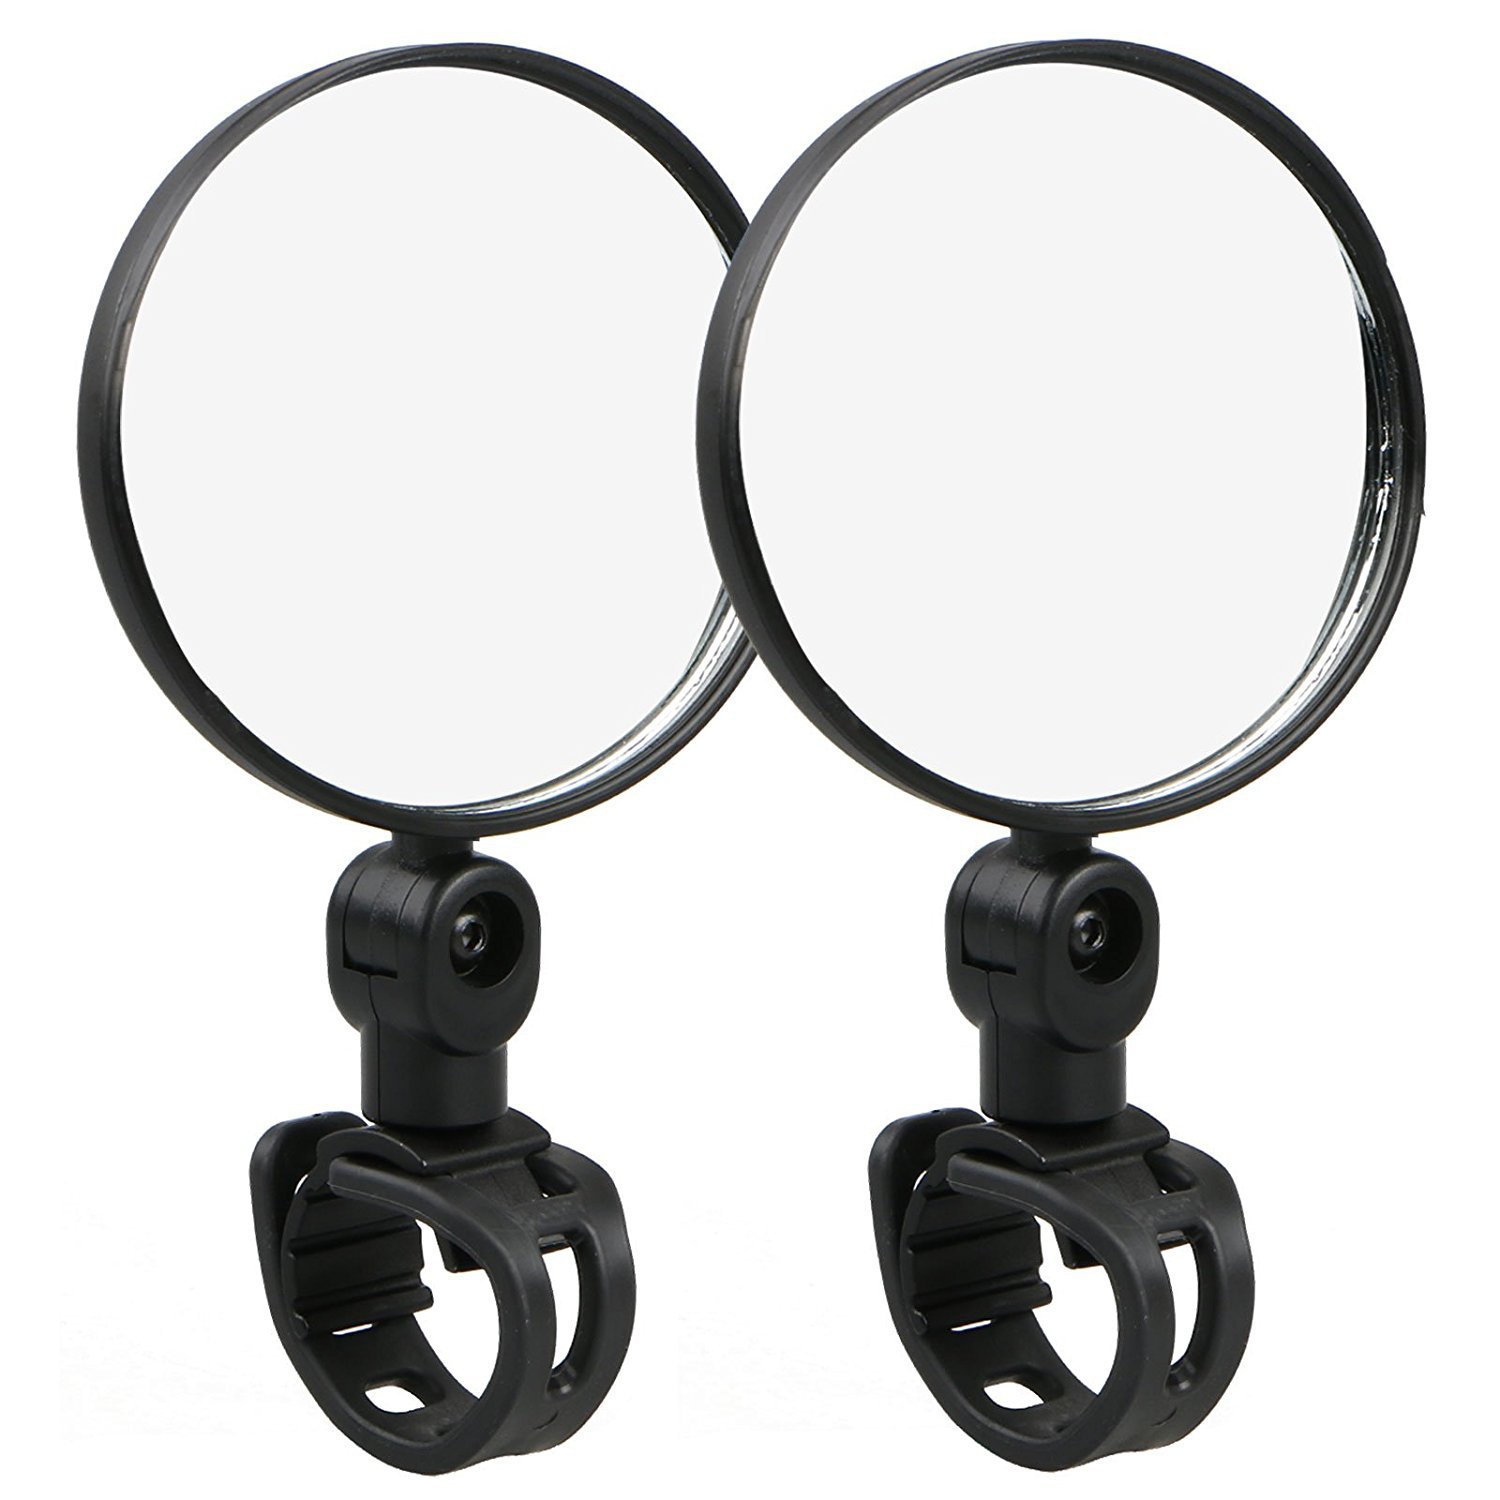 自行车后视镜 摩托车广角凸面反光镜 观后镜 360度方位可调后视镜